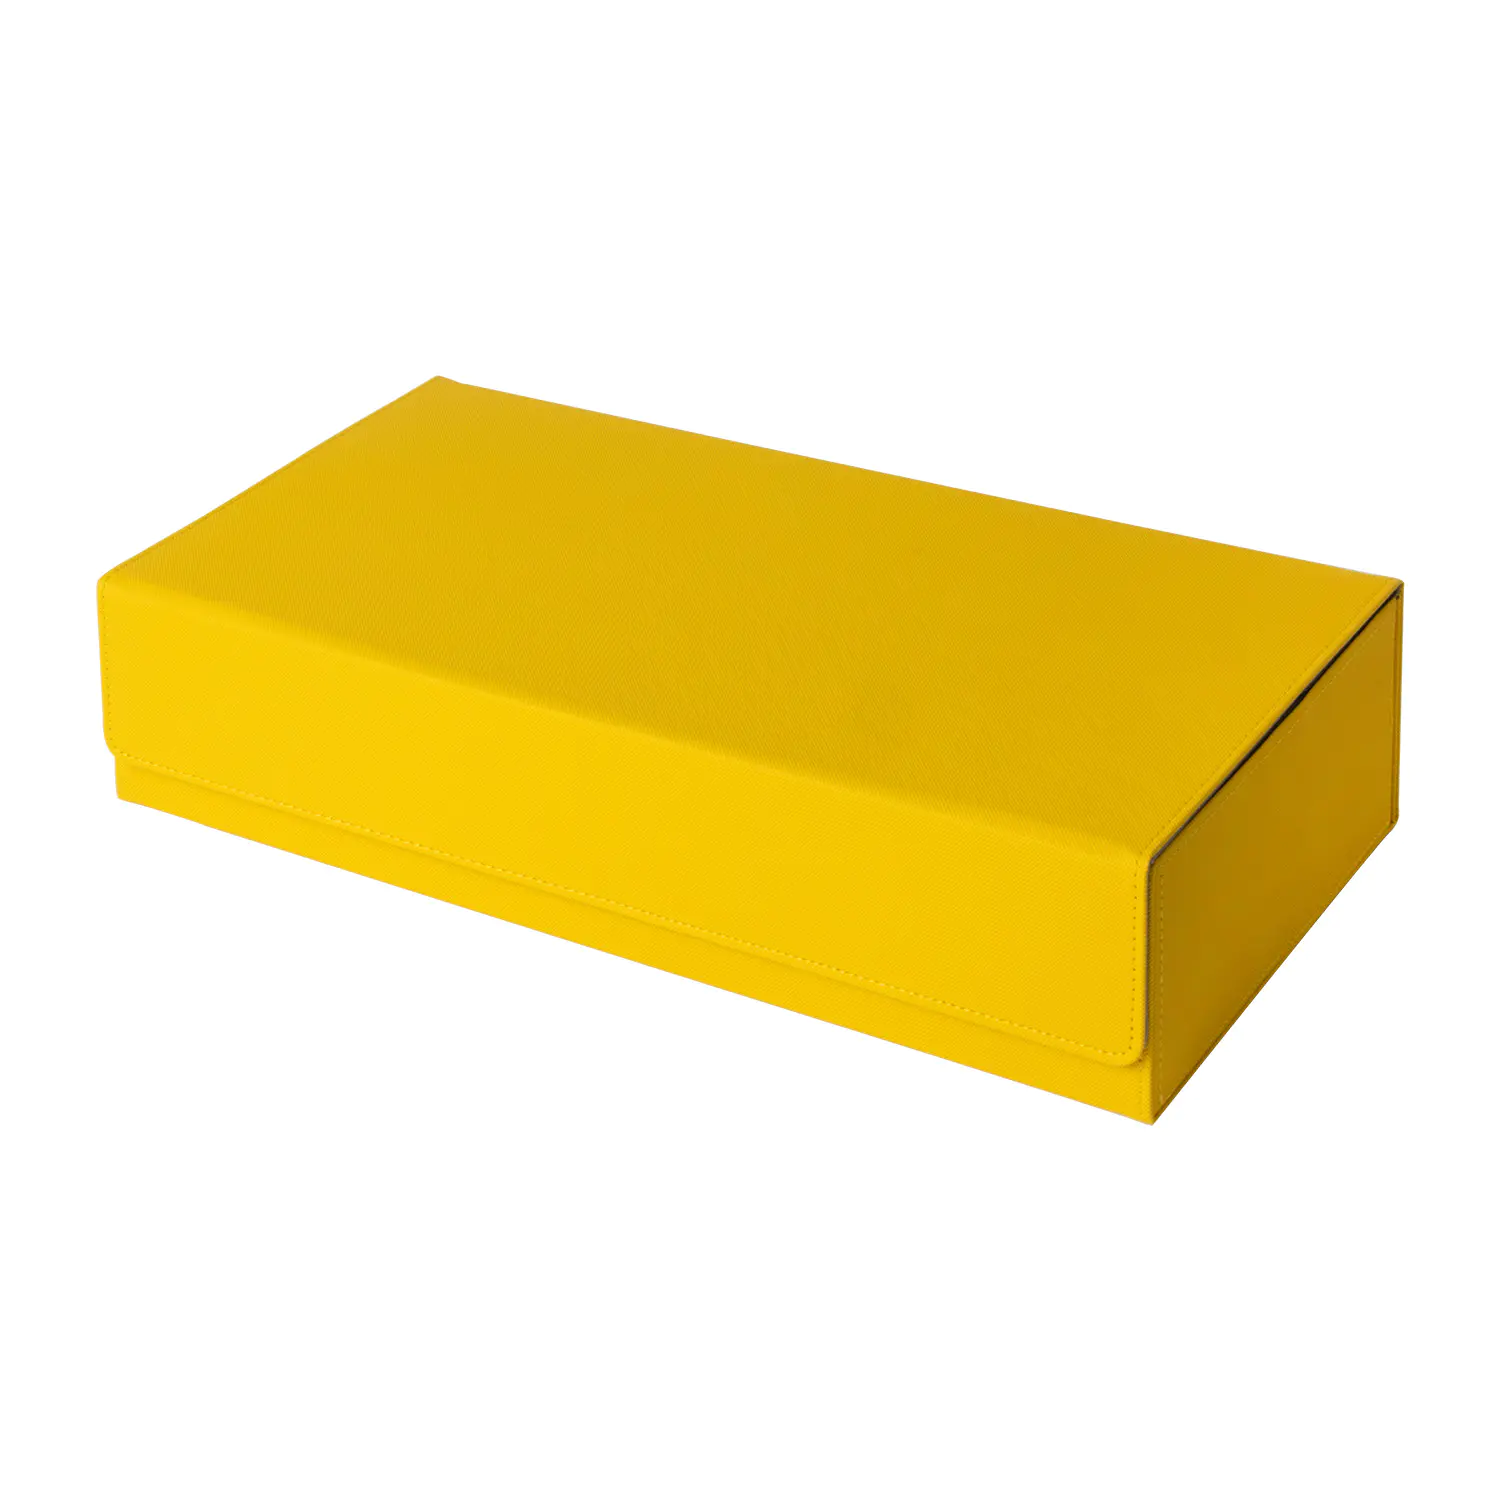 550 Premium PU หนังดาดฟ้า เคส การ์ดป้องกันกล่องเก็บสํารับ - สีเหลือง